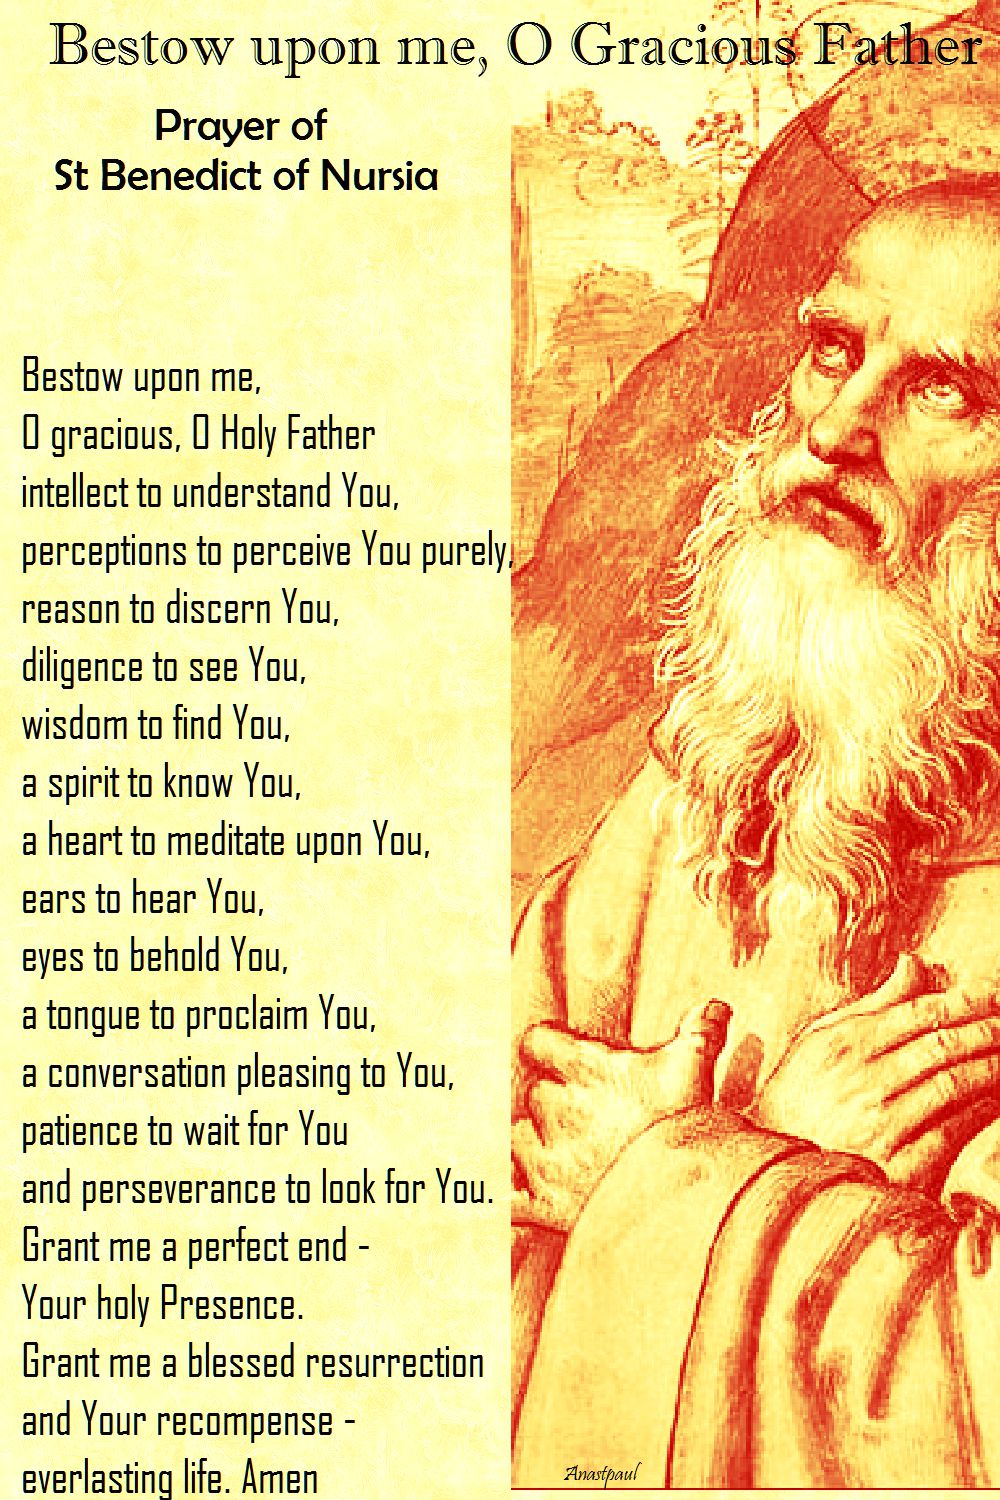 bestow upon me o gracious father - prayer of st benedict